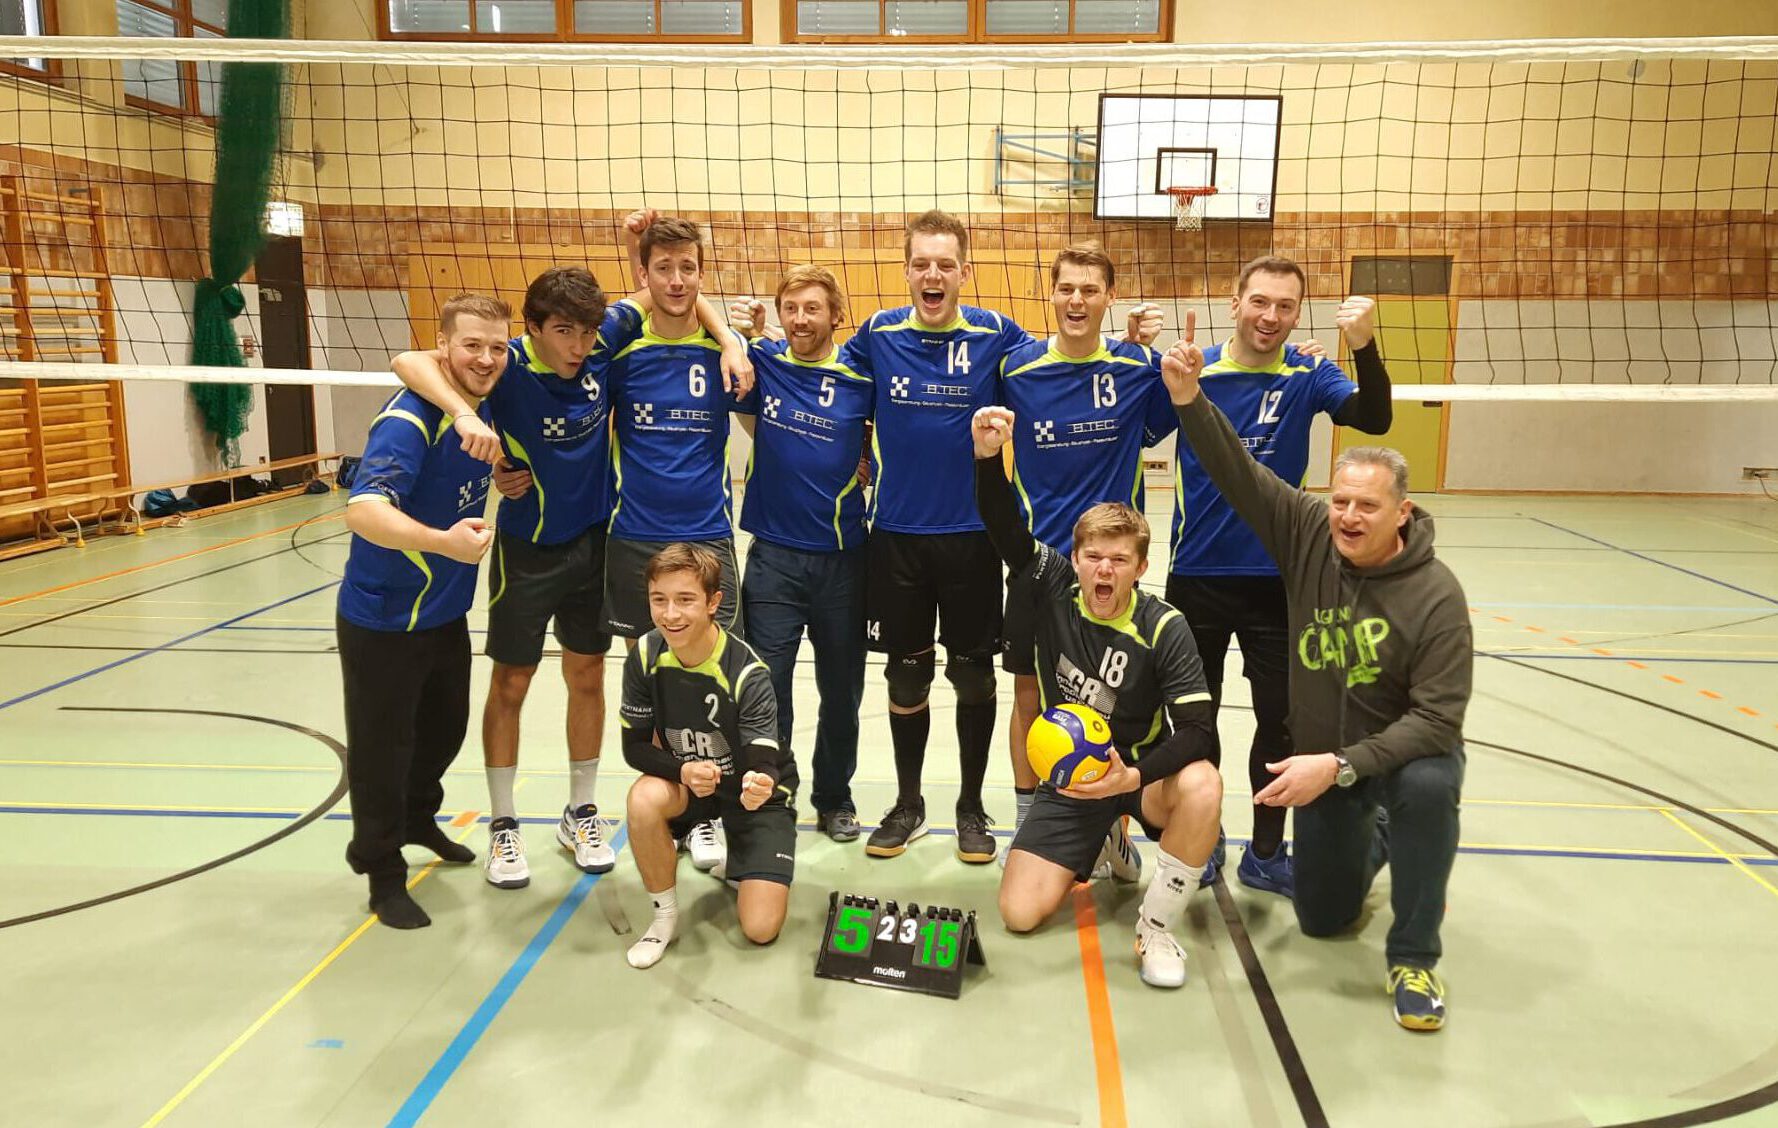 https://www.volleyball-rosenheim.de/wp-content/uploads/2022/12/Volleyball_Rosenheim_Herren2_Siege-e1671549793393.jpeg